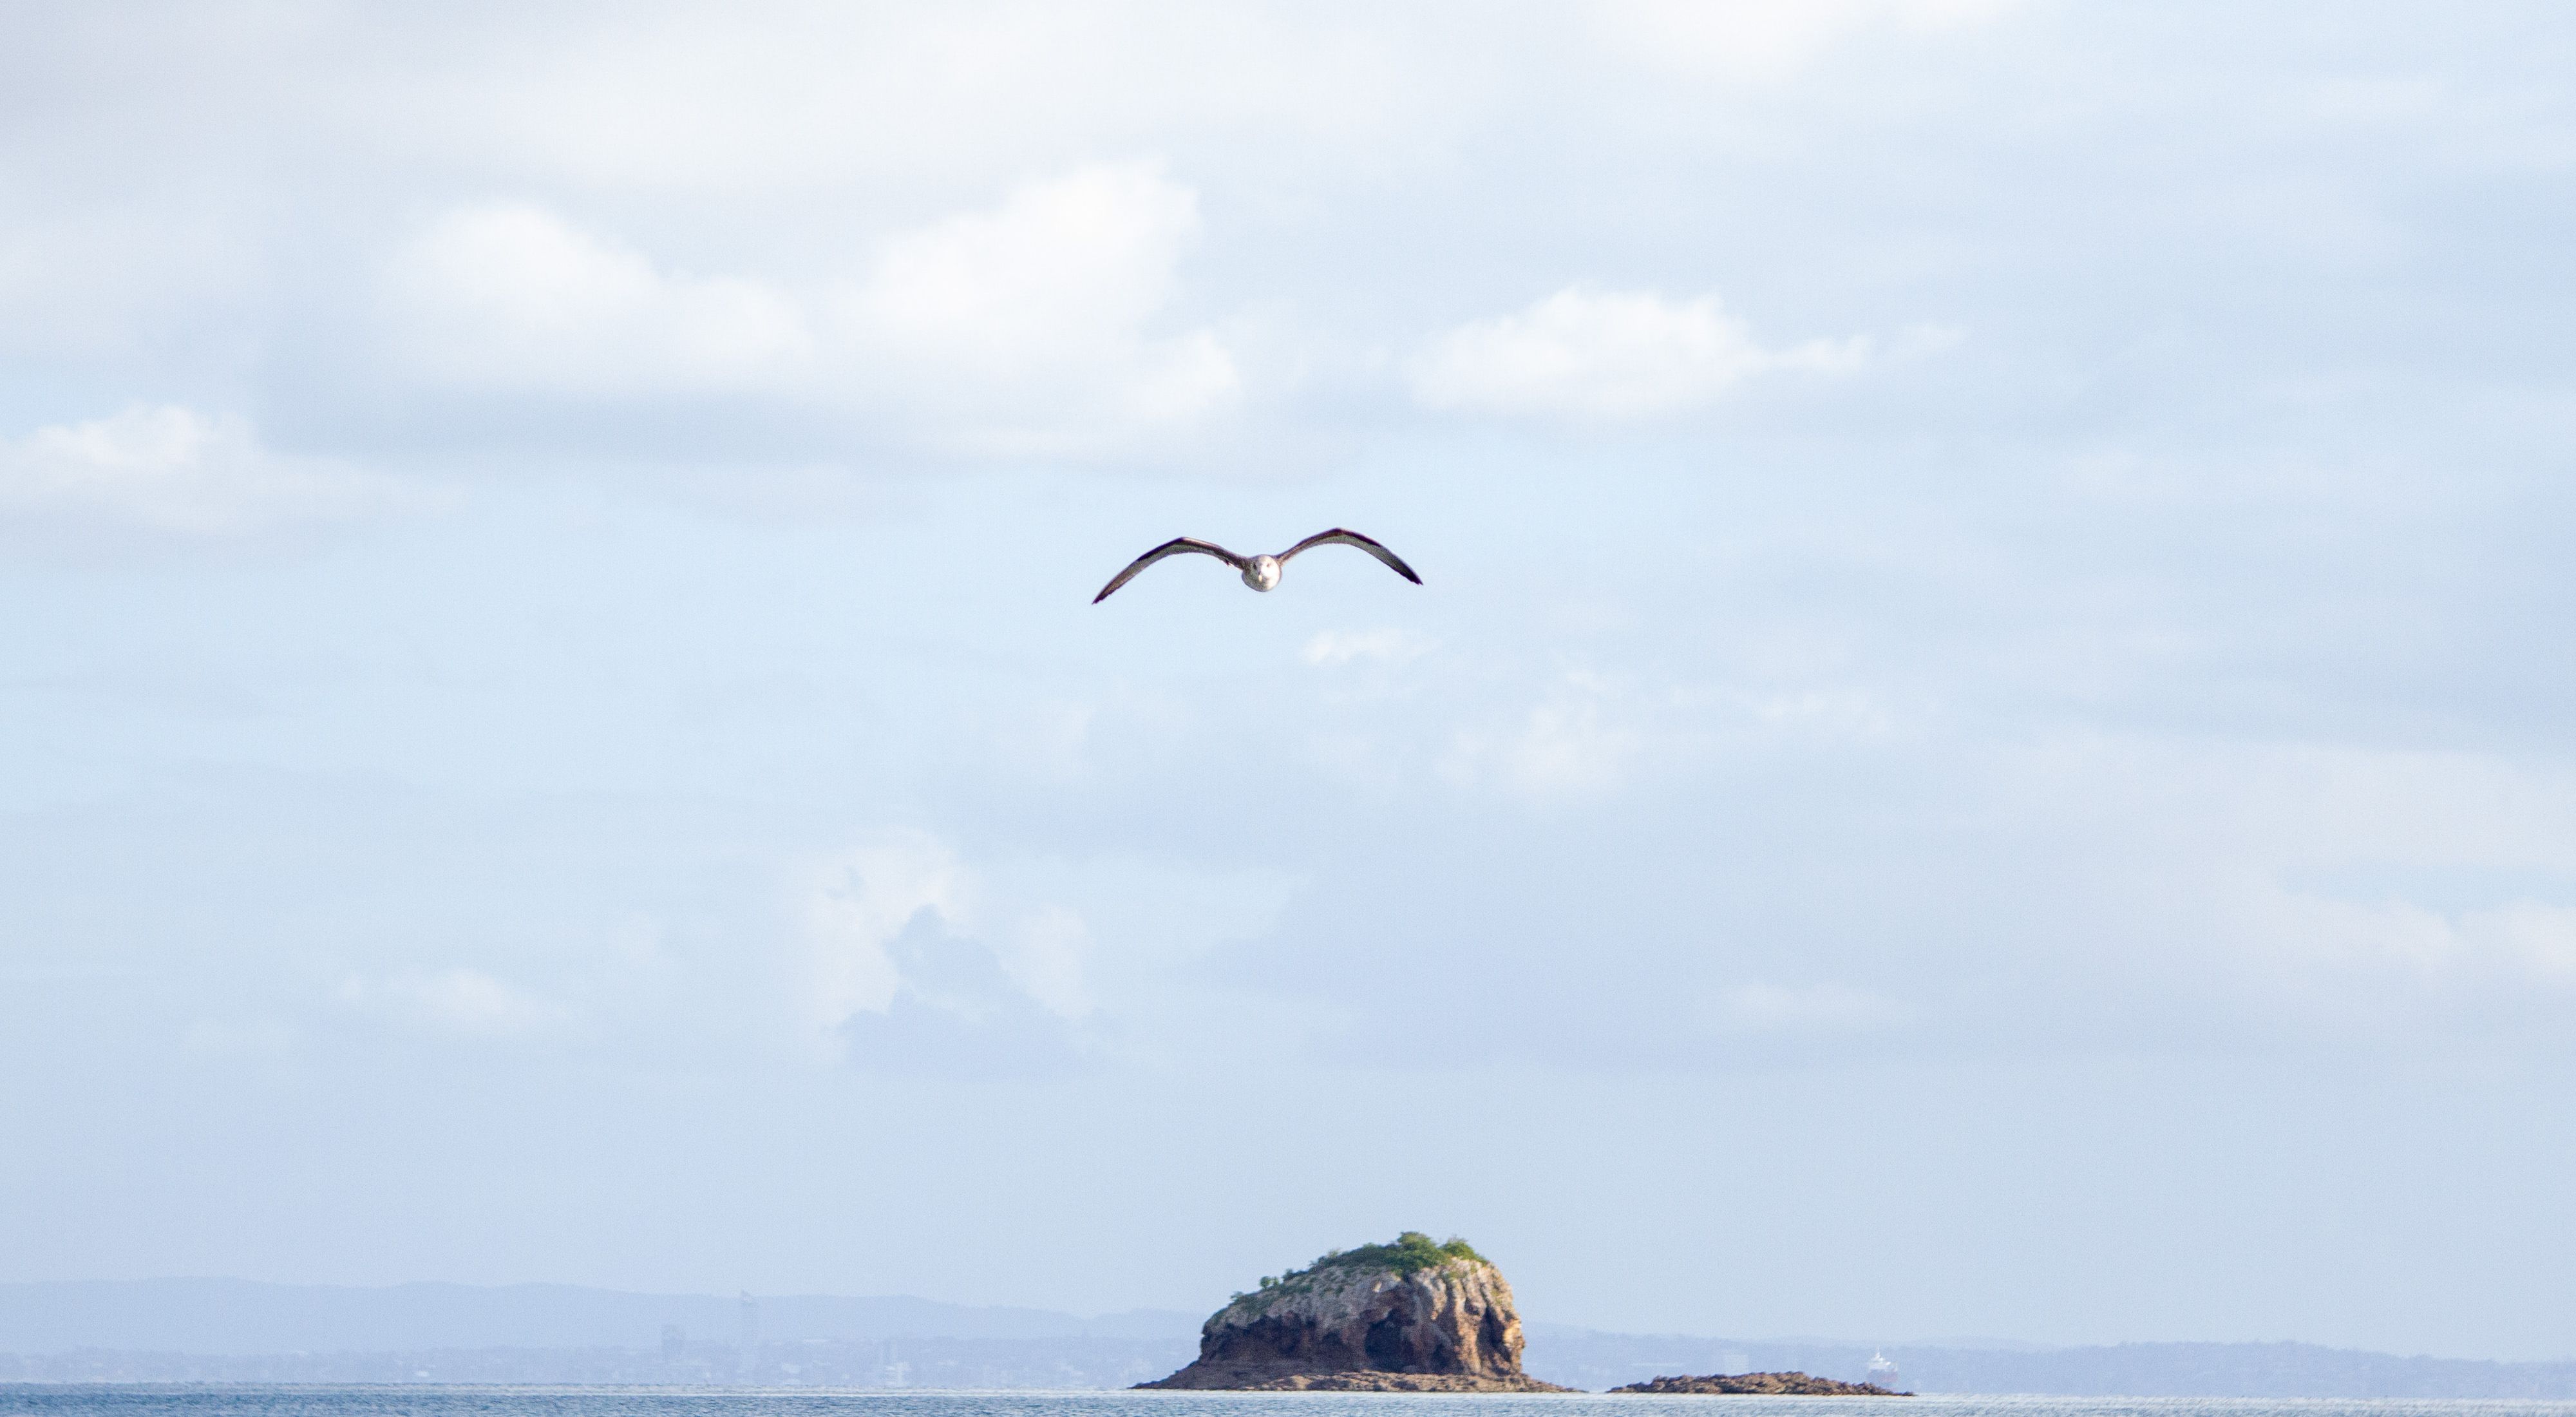 A seabird flies over open water.